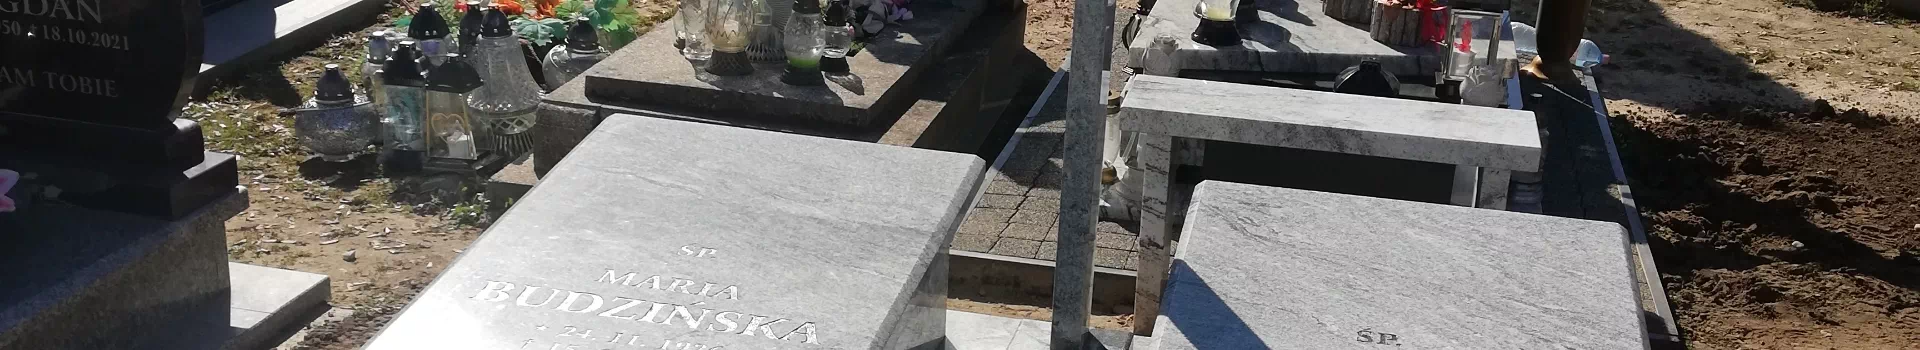 Pojedyncze nagrobki na cmentarzu